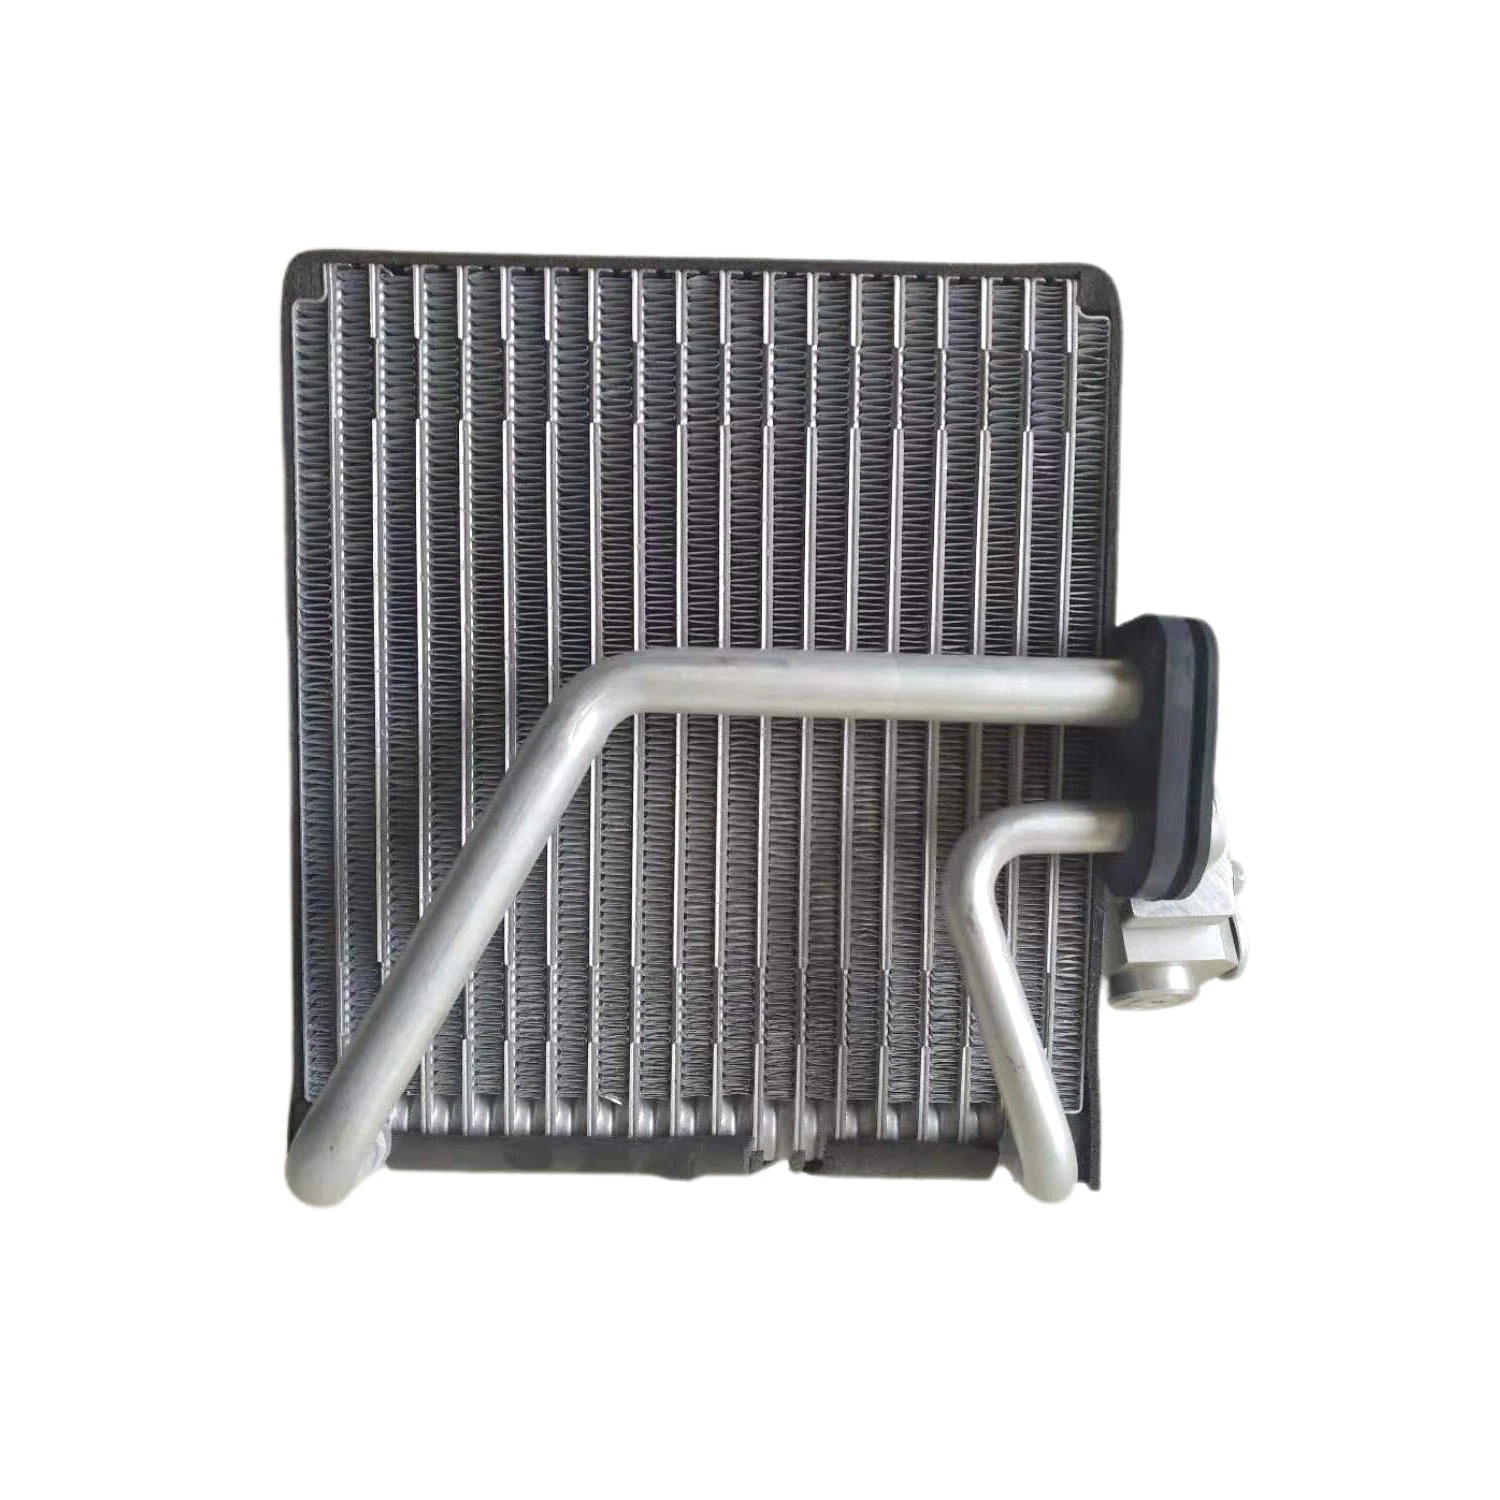 Intercambiador de calor de microcanal de aluminio para automóviles